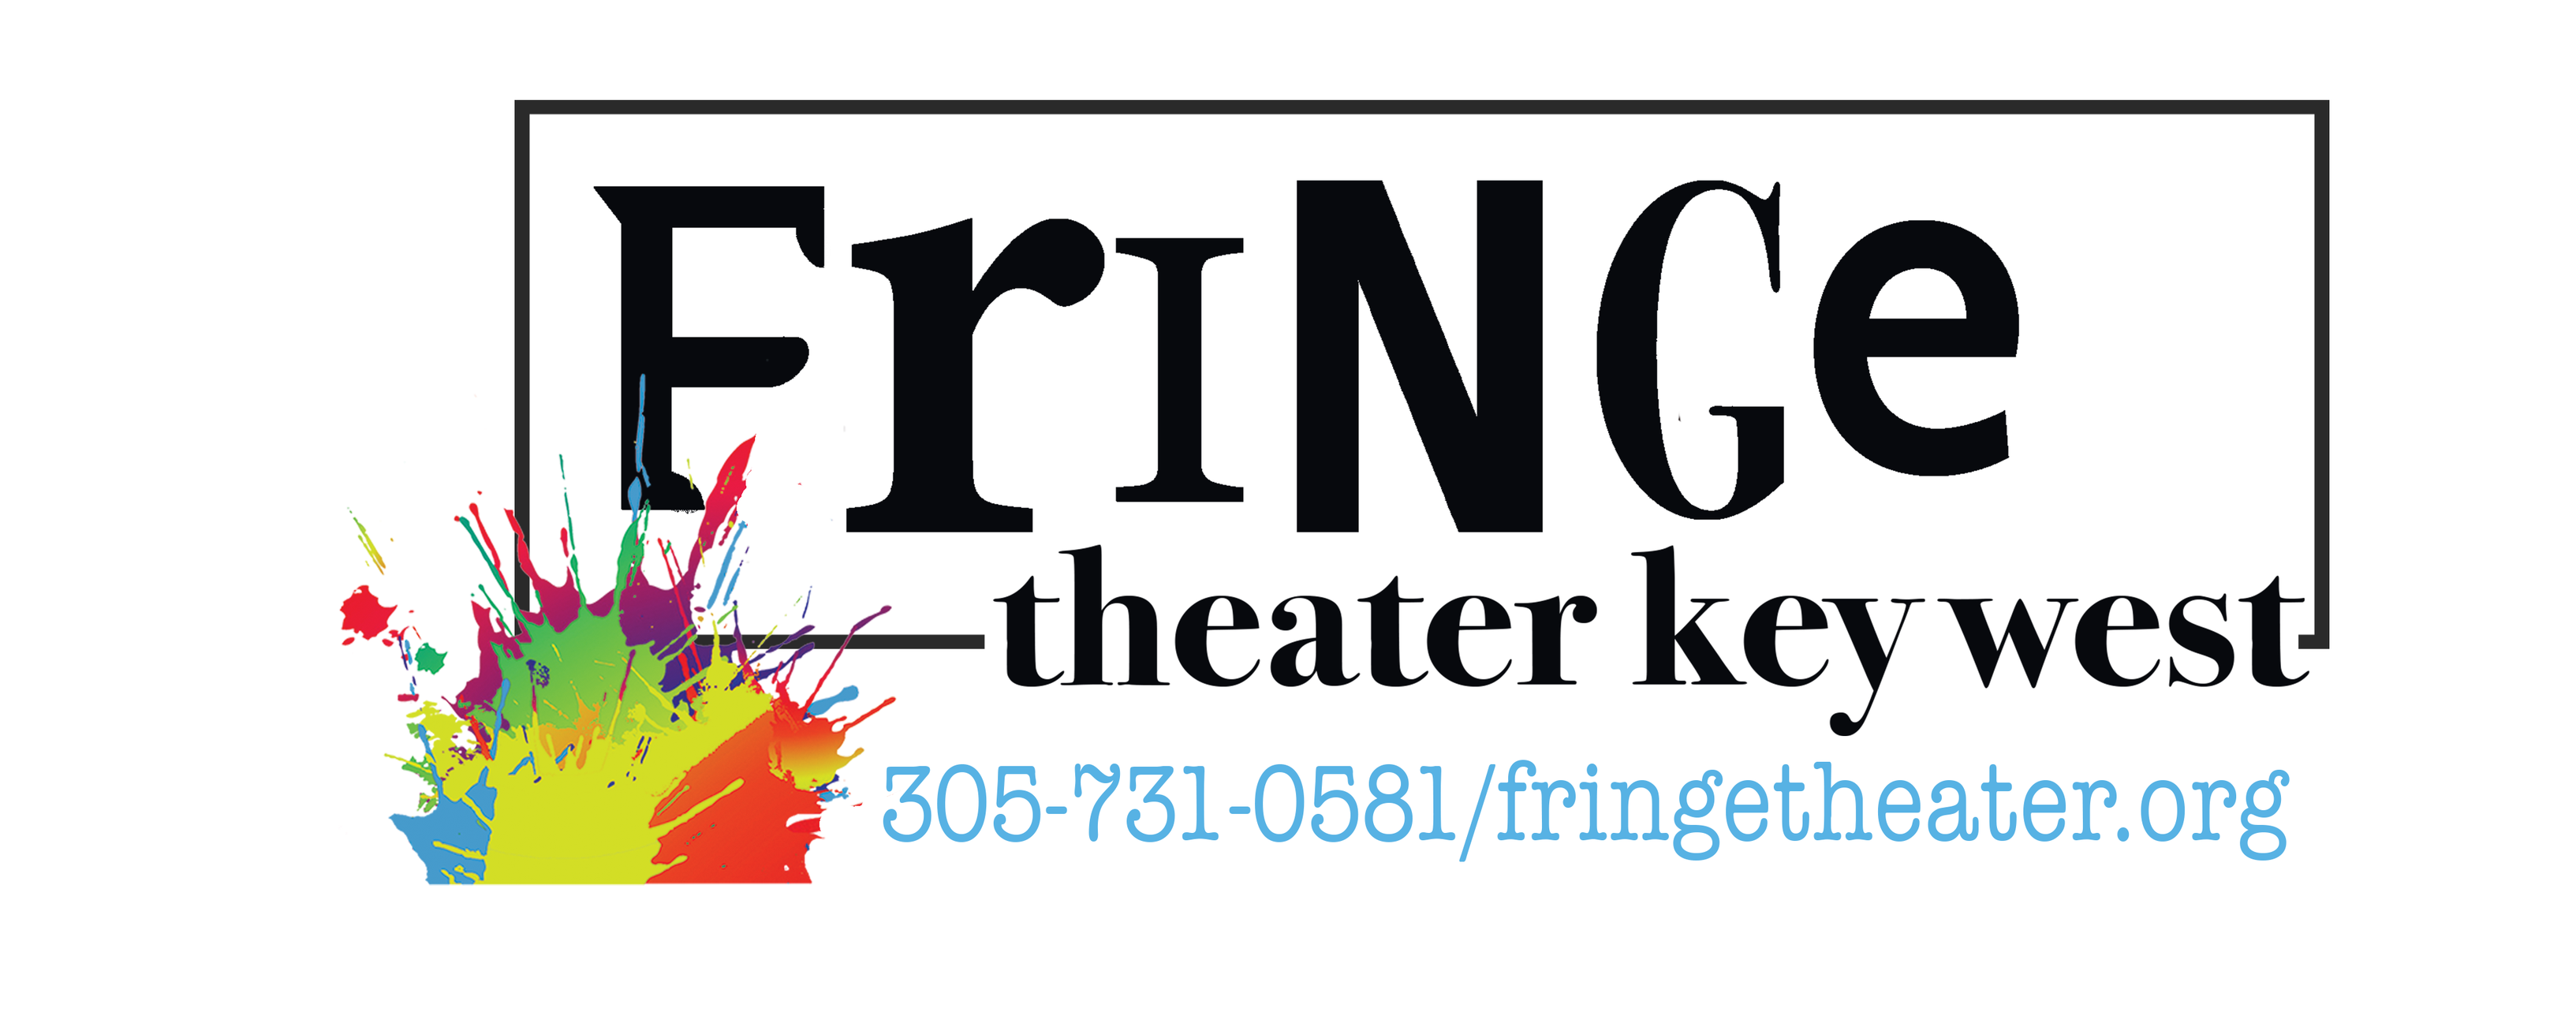 Fringe Theater Key West